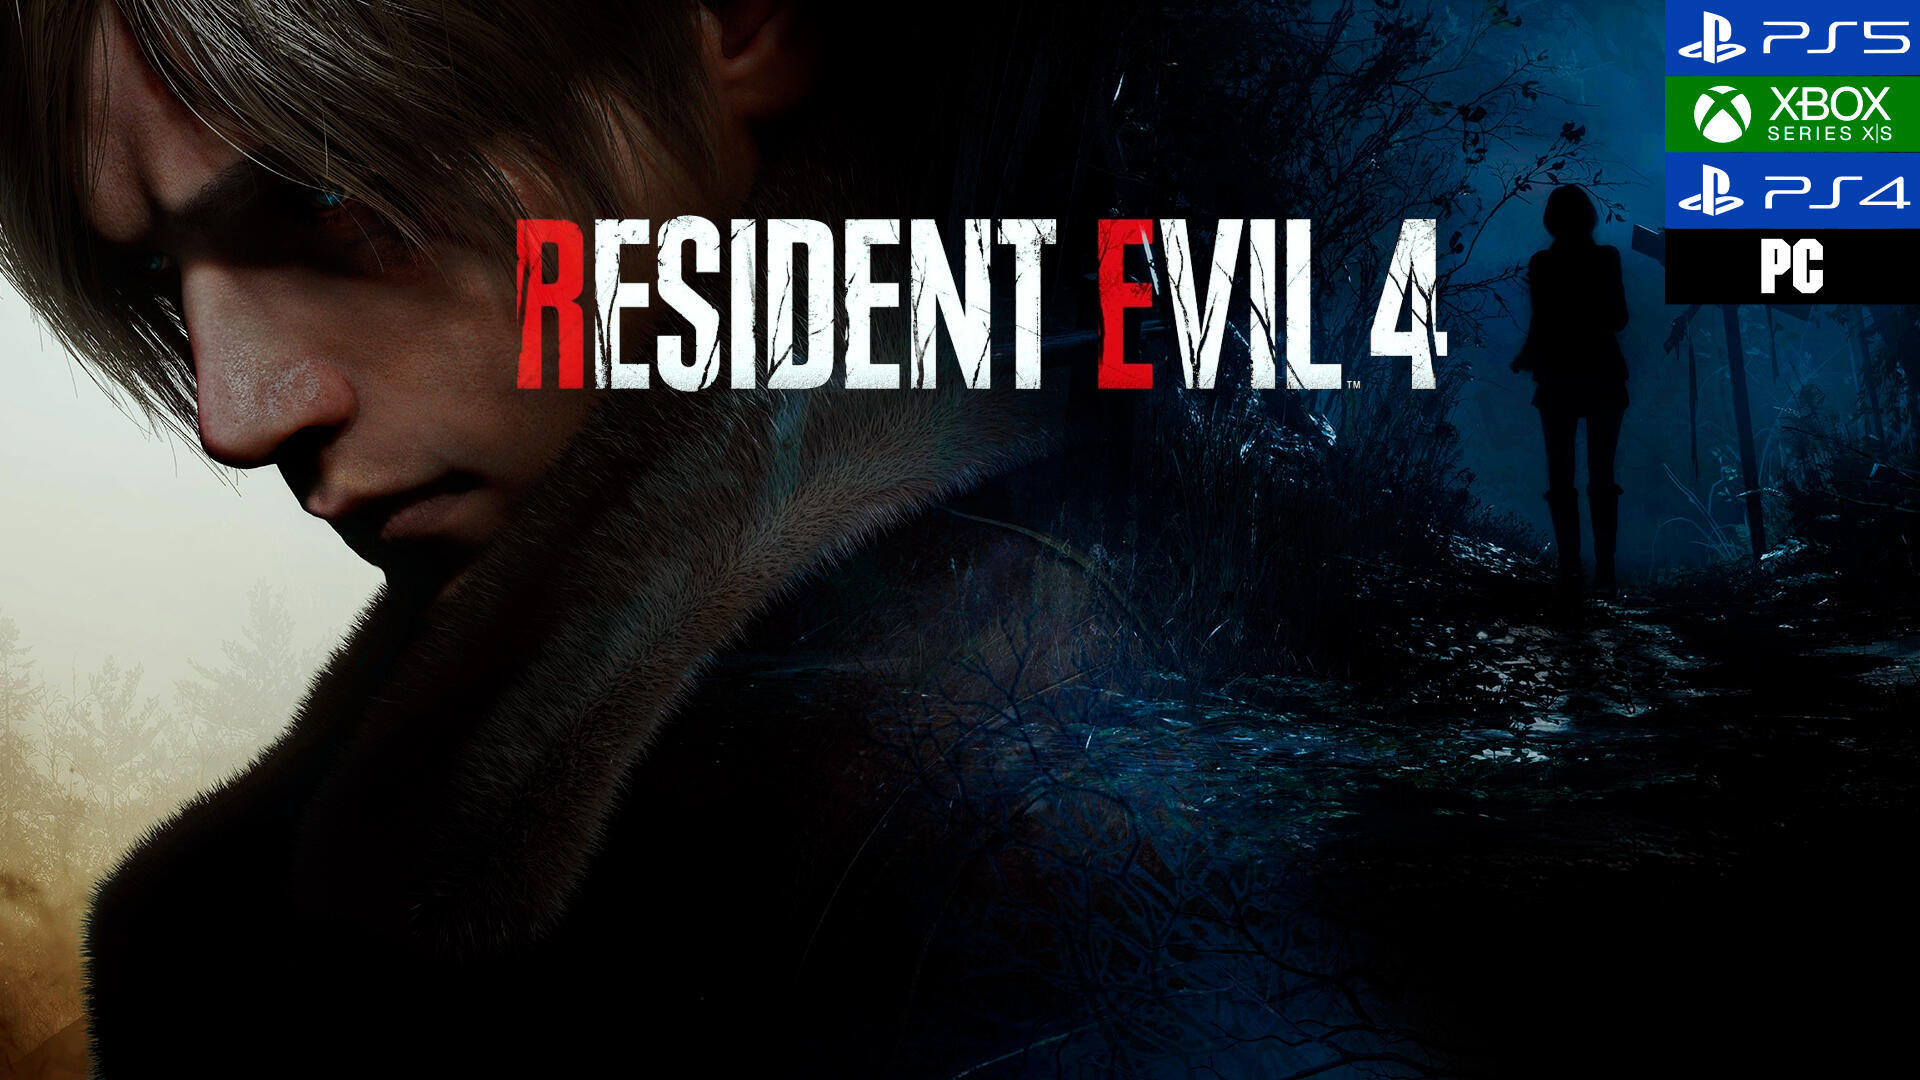 Análisis de Resident Evil 4 Remake: el glorioso renacer del Survival Horror  más visceral sumado al poderío de una nueva generación.